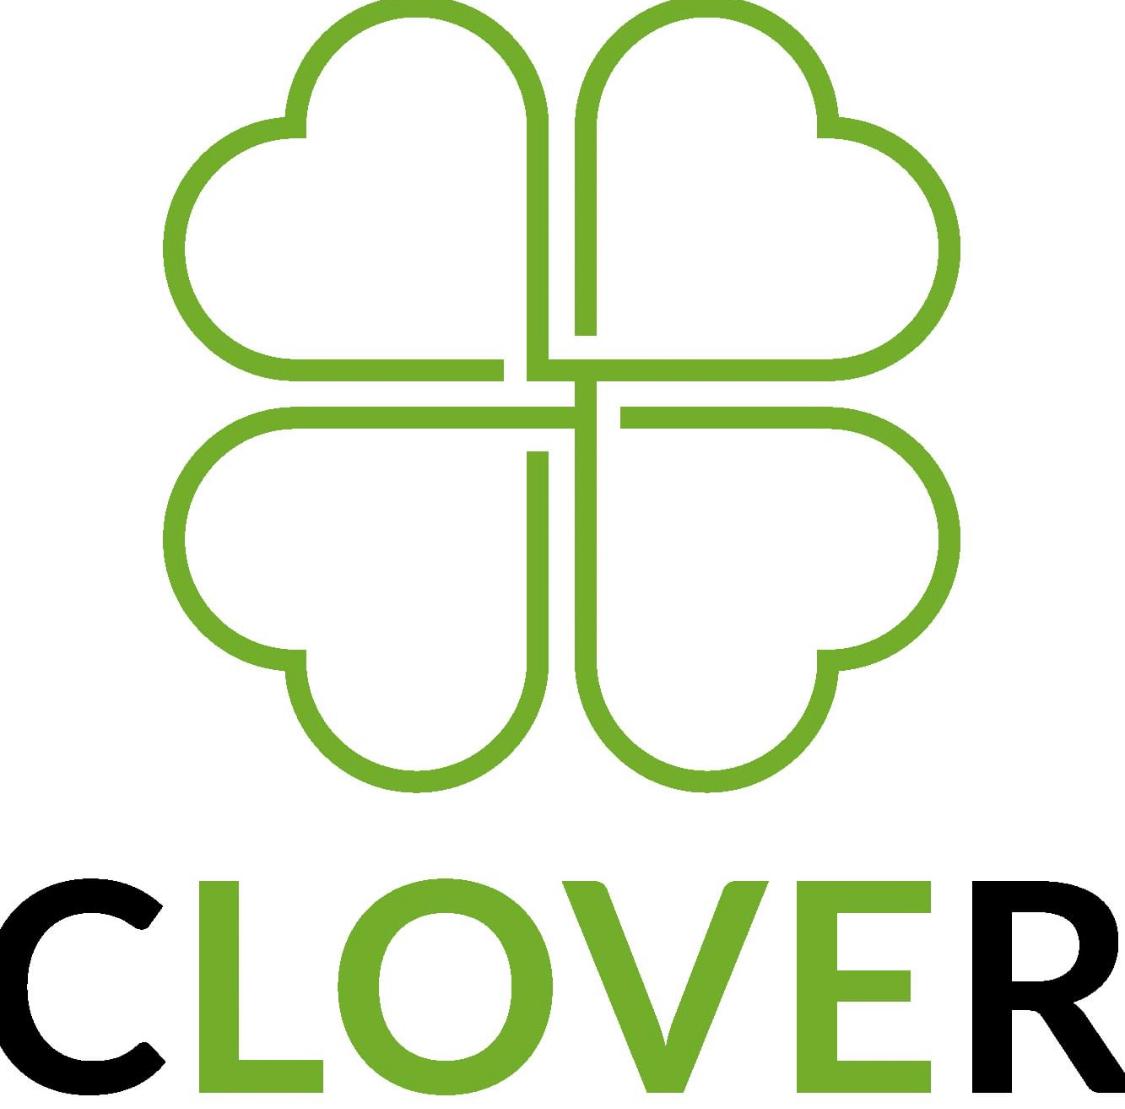 クローバー薬局のロゴ画像